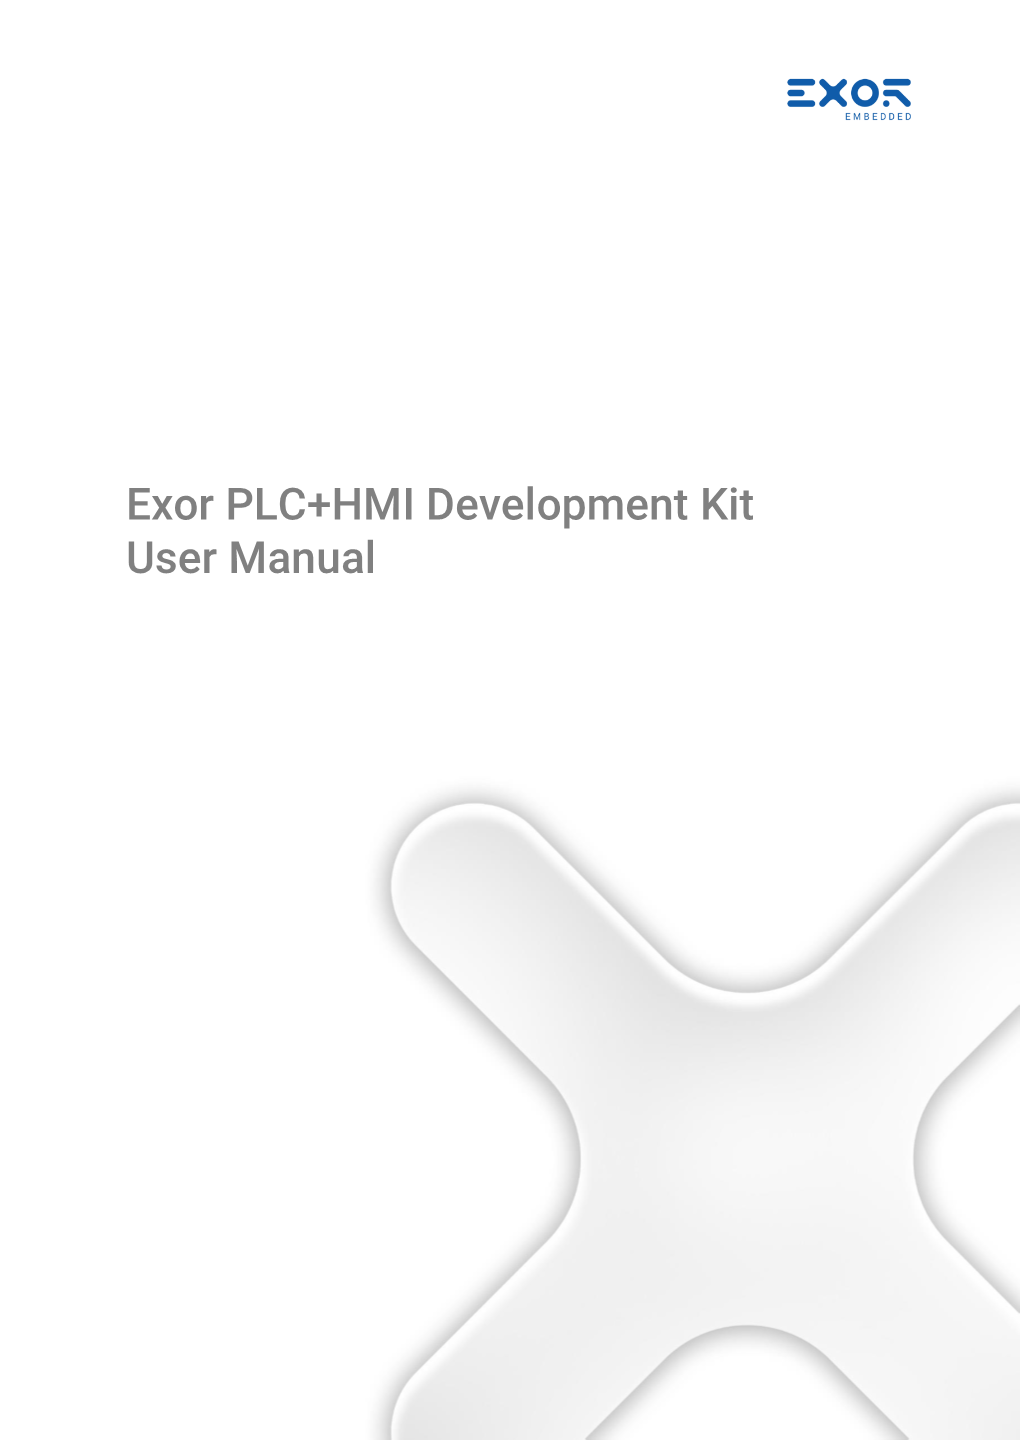 Exor PLC+HMI Development Kit User Manual